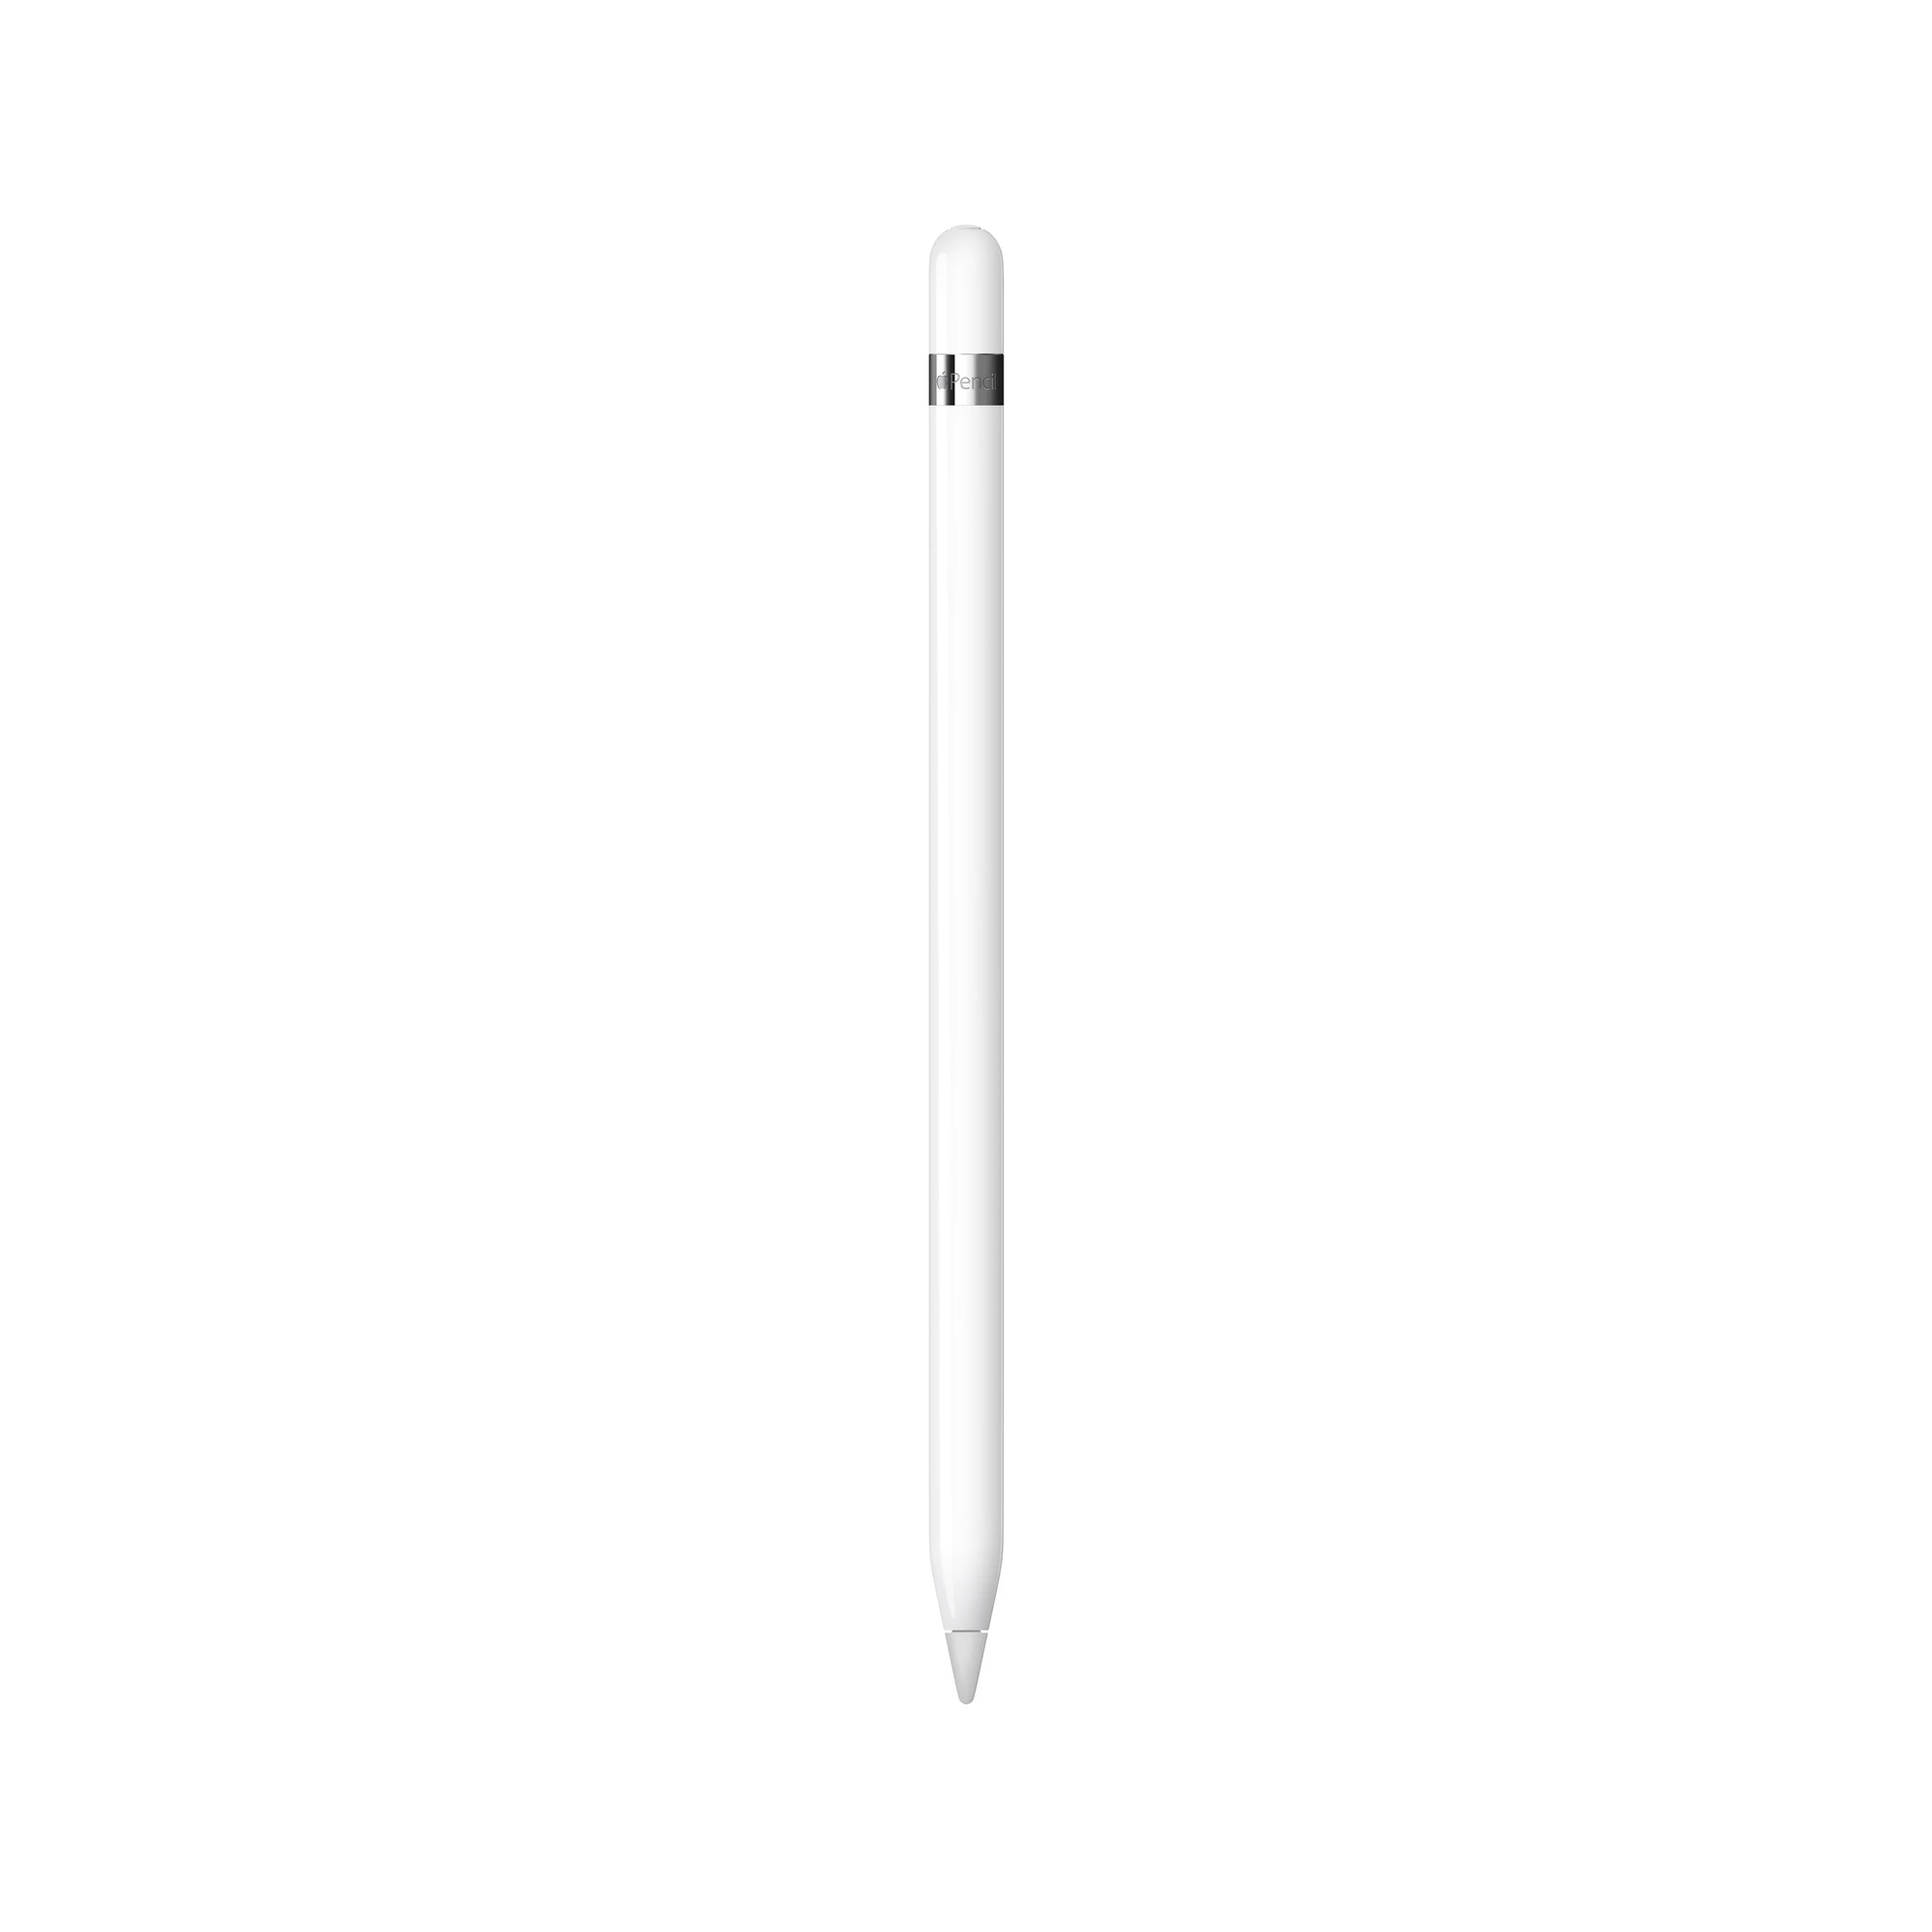 Air pencil. Стилус Apple Pencil mk0c2zm/a. Стилус Apple Pencil 2 White. Apple Pencil 1 поколения. Стилус Apple Pencil 1-го поколения.